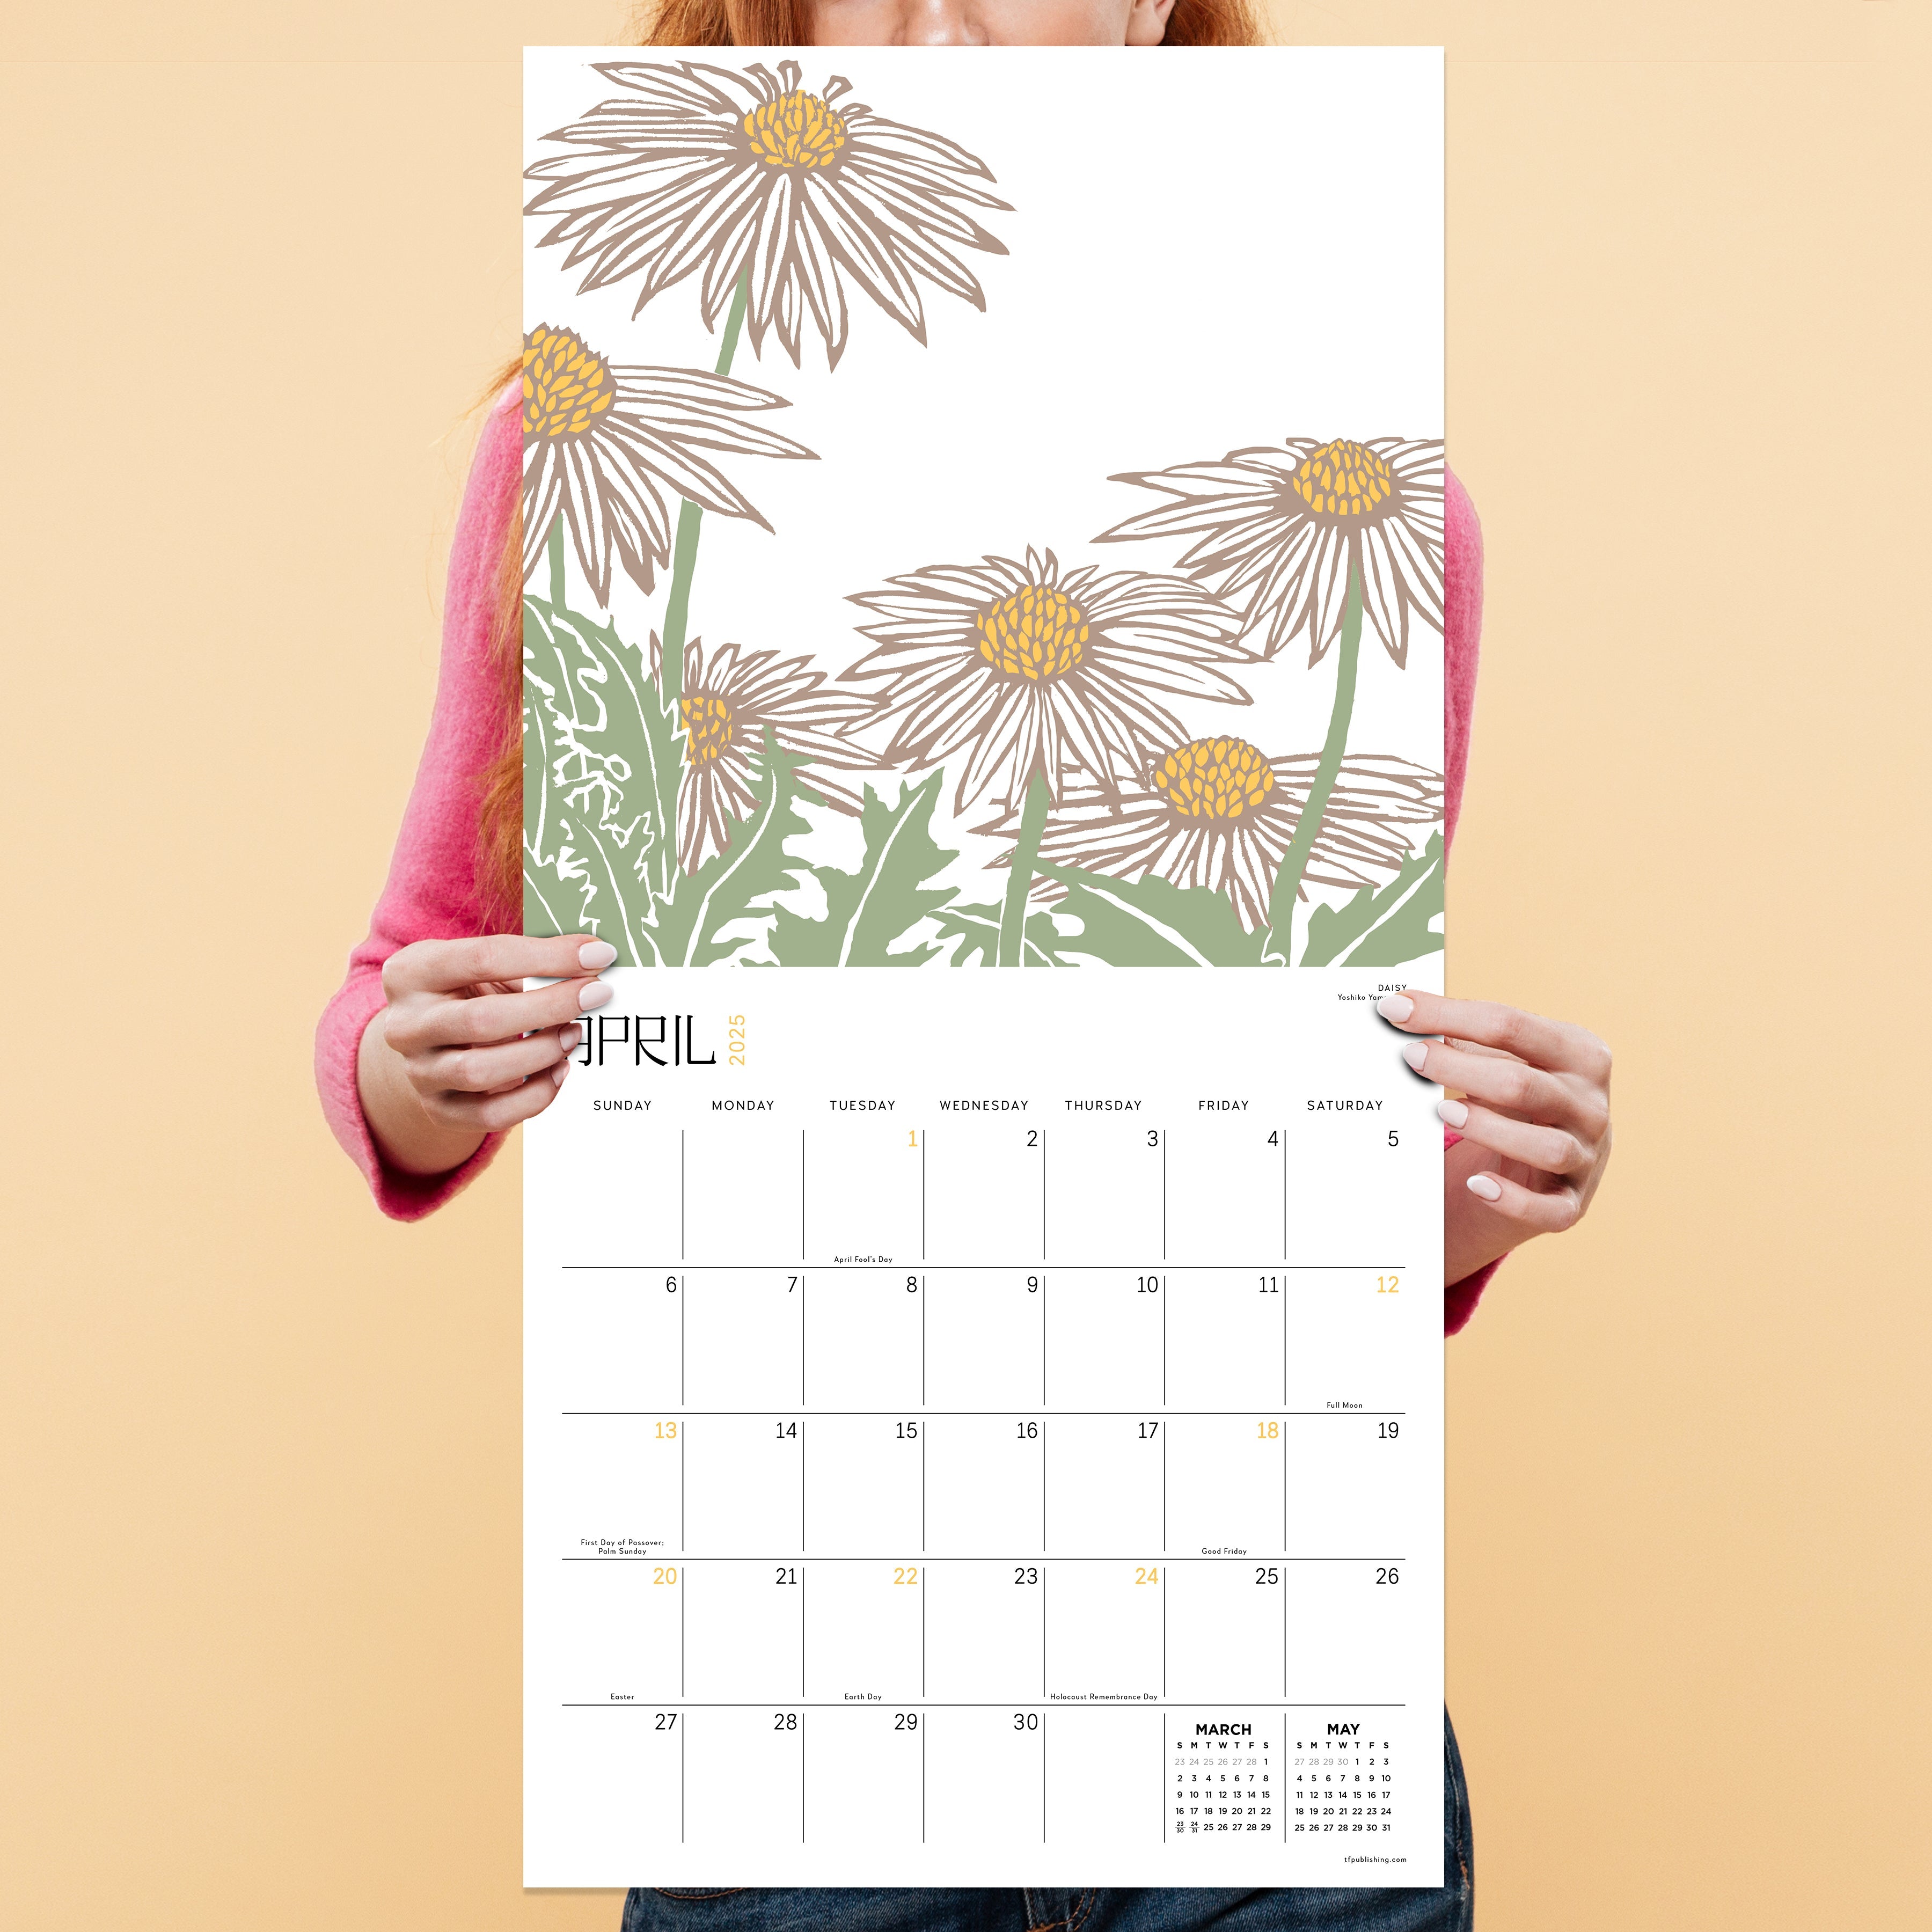 2025 Flower Garden - Square Wall Calendar